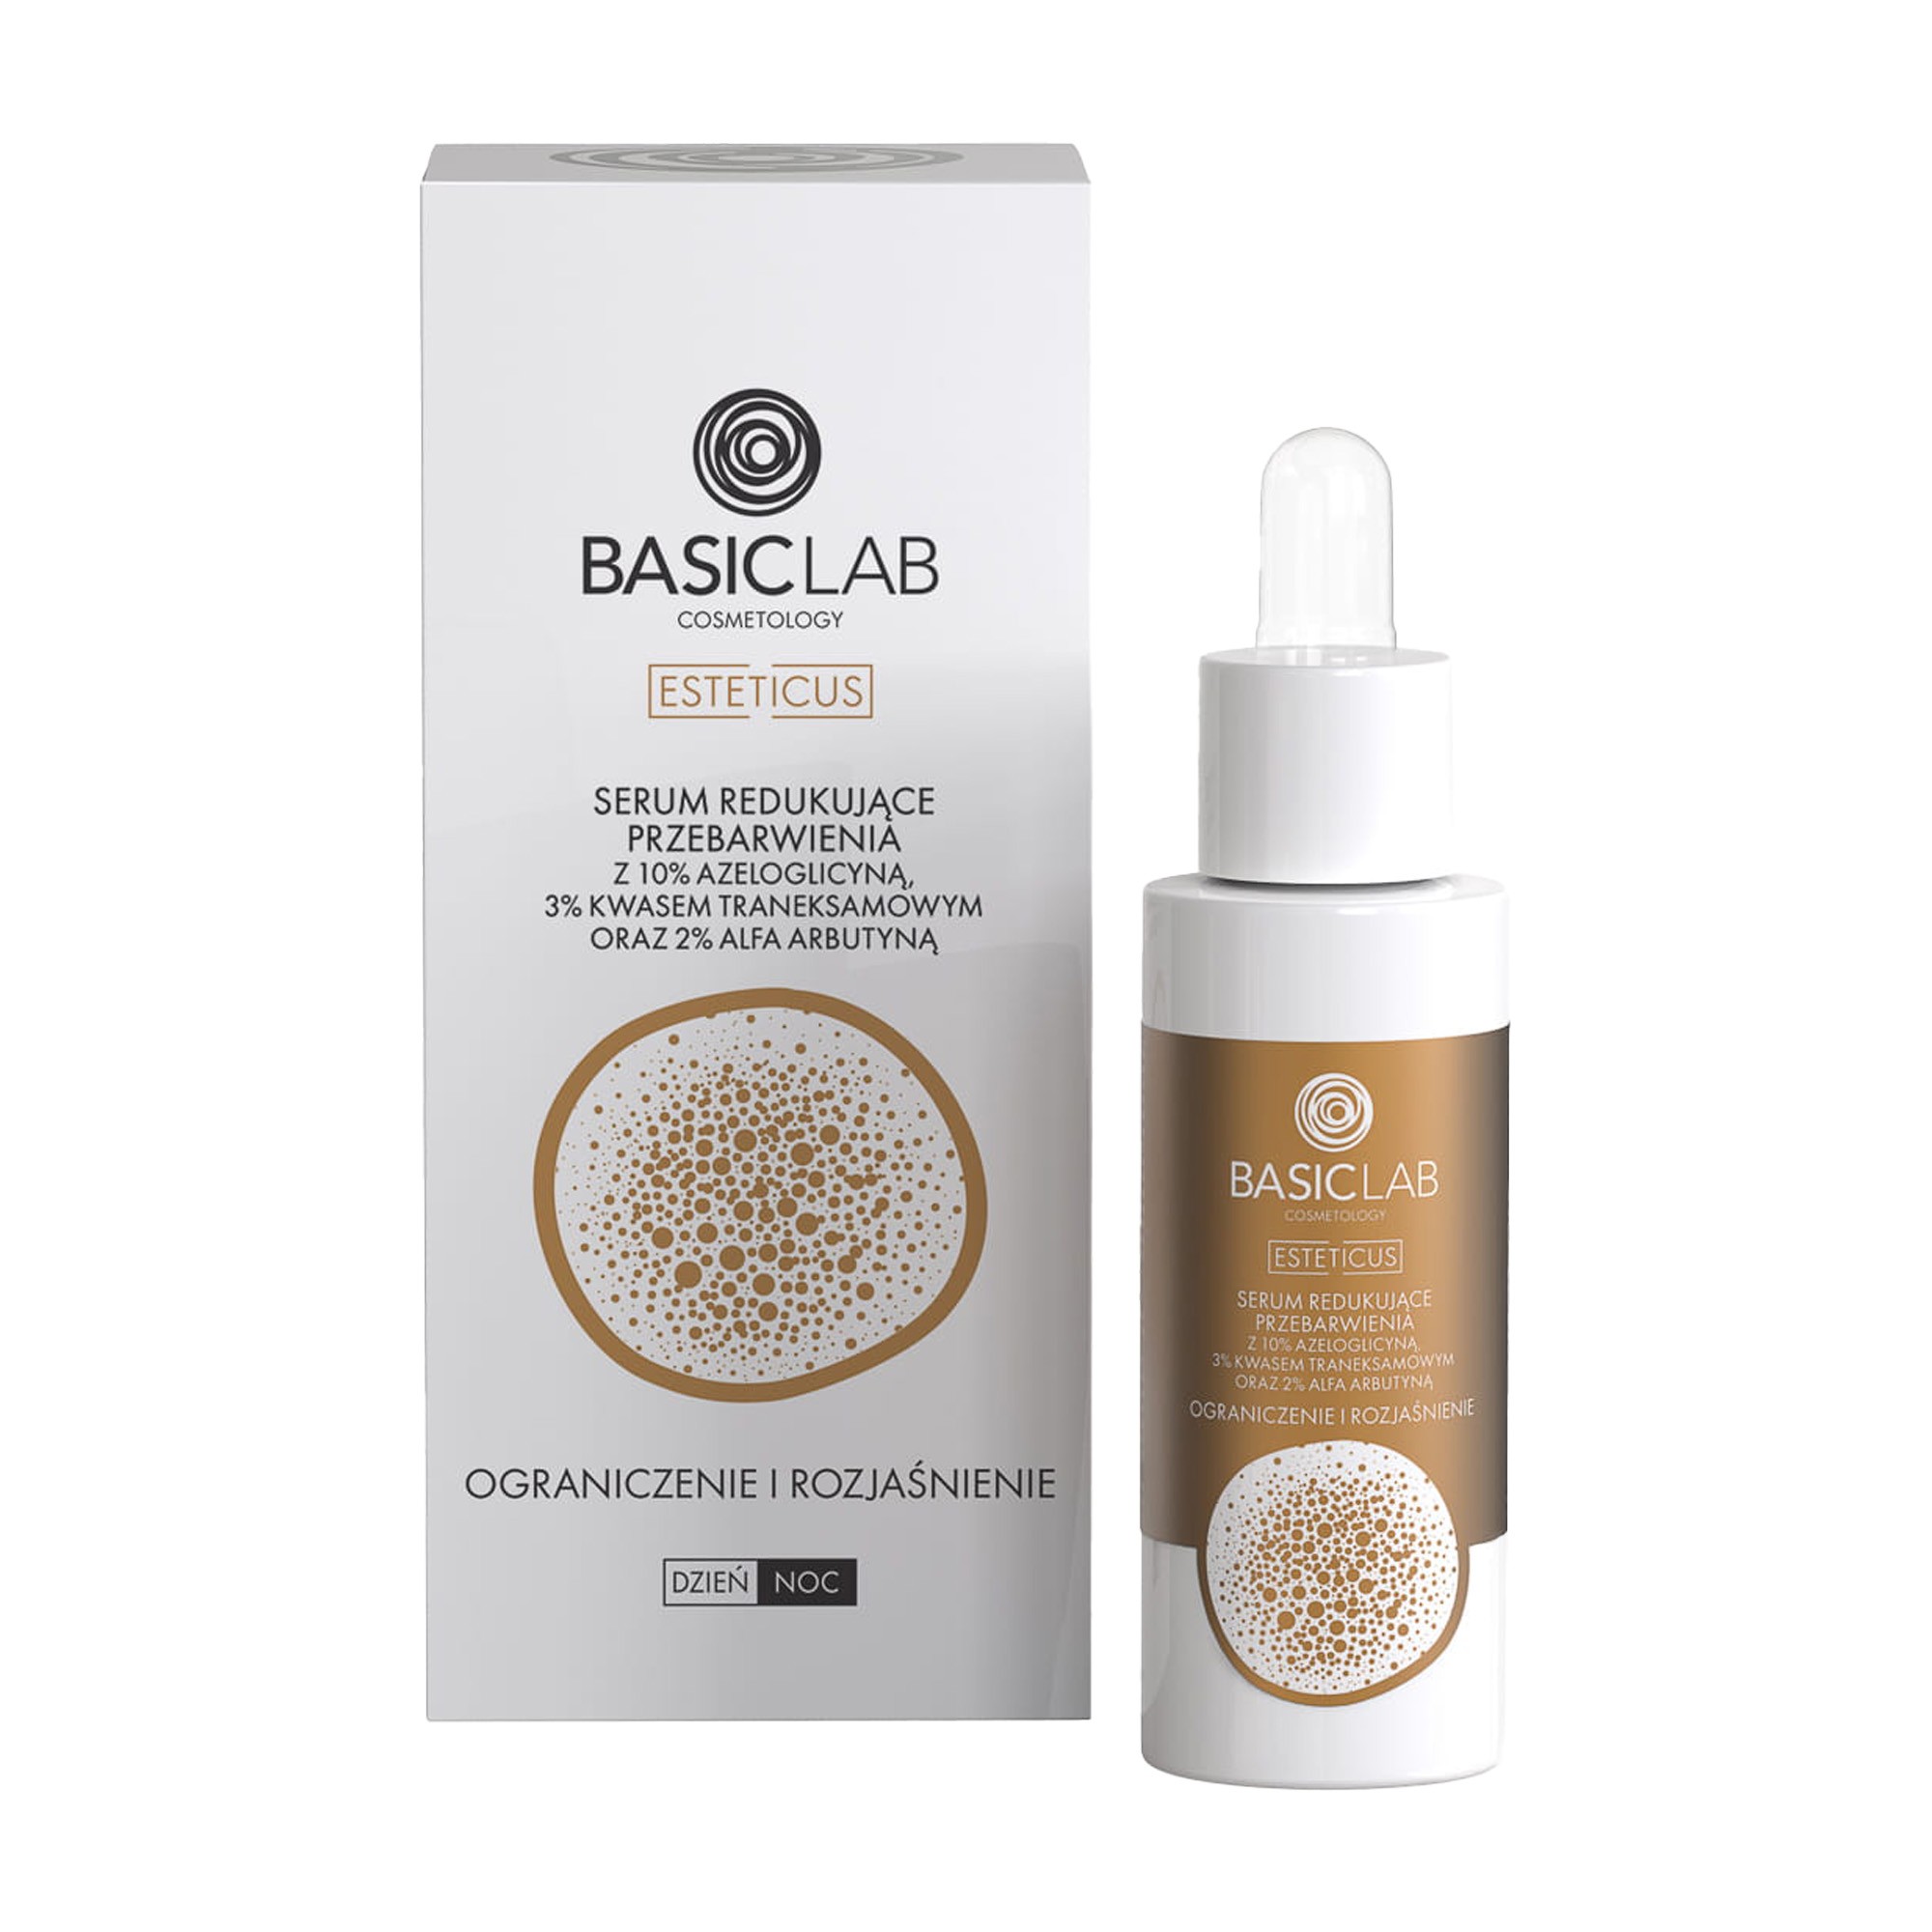 BasicLab Esteticus, serum redukujące przebarwienia, 30 ml